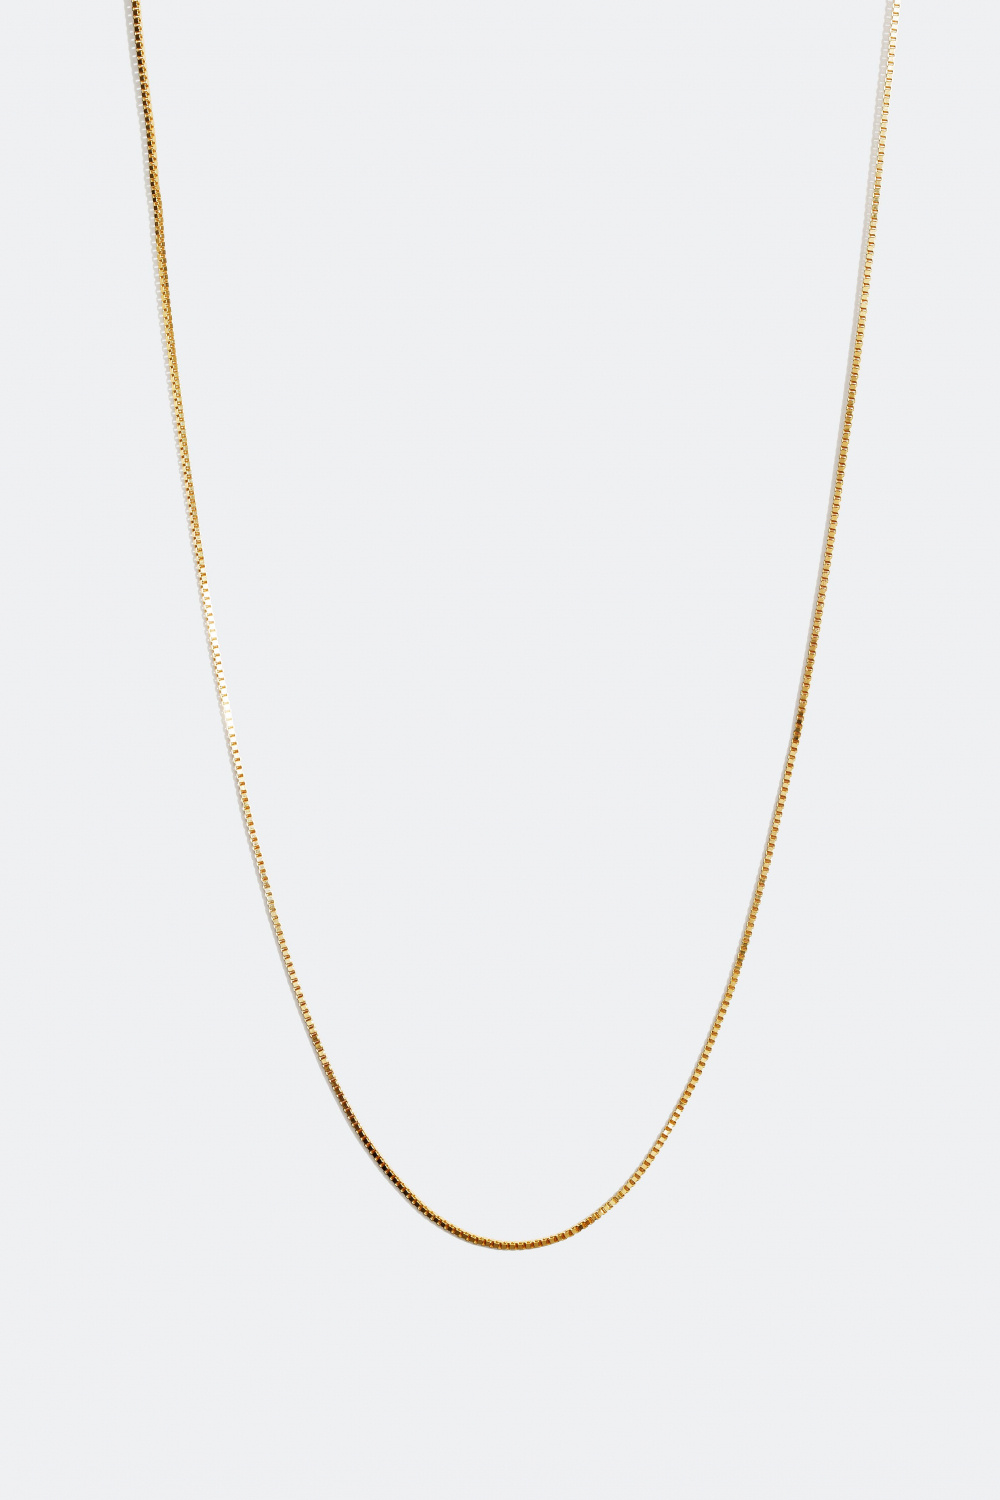 Venetiansk halskedja förgylld med 18 karat guld, 45 cm